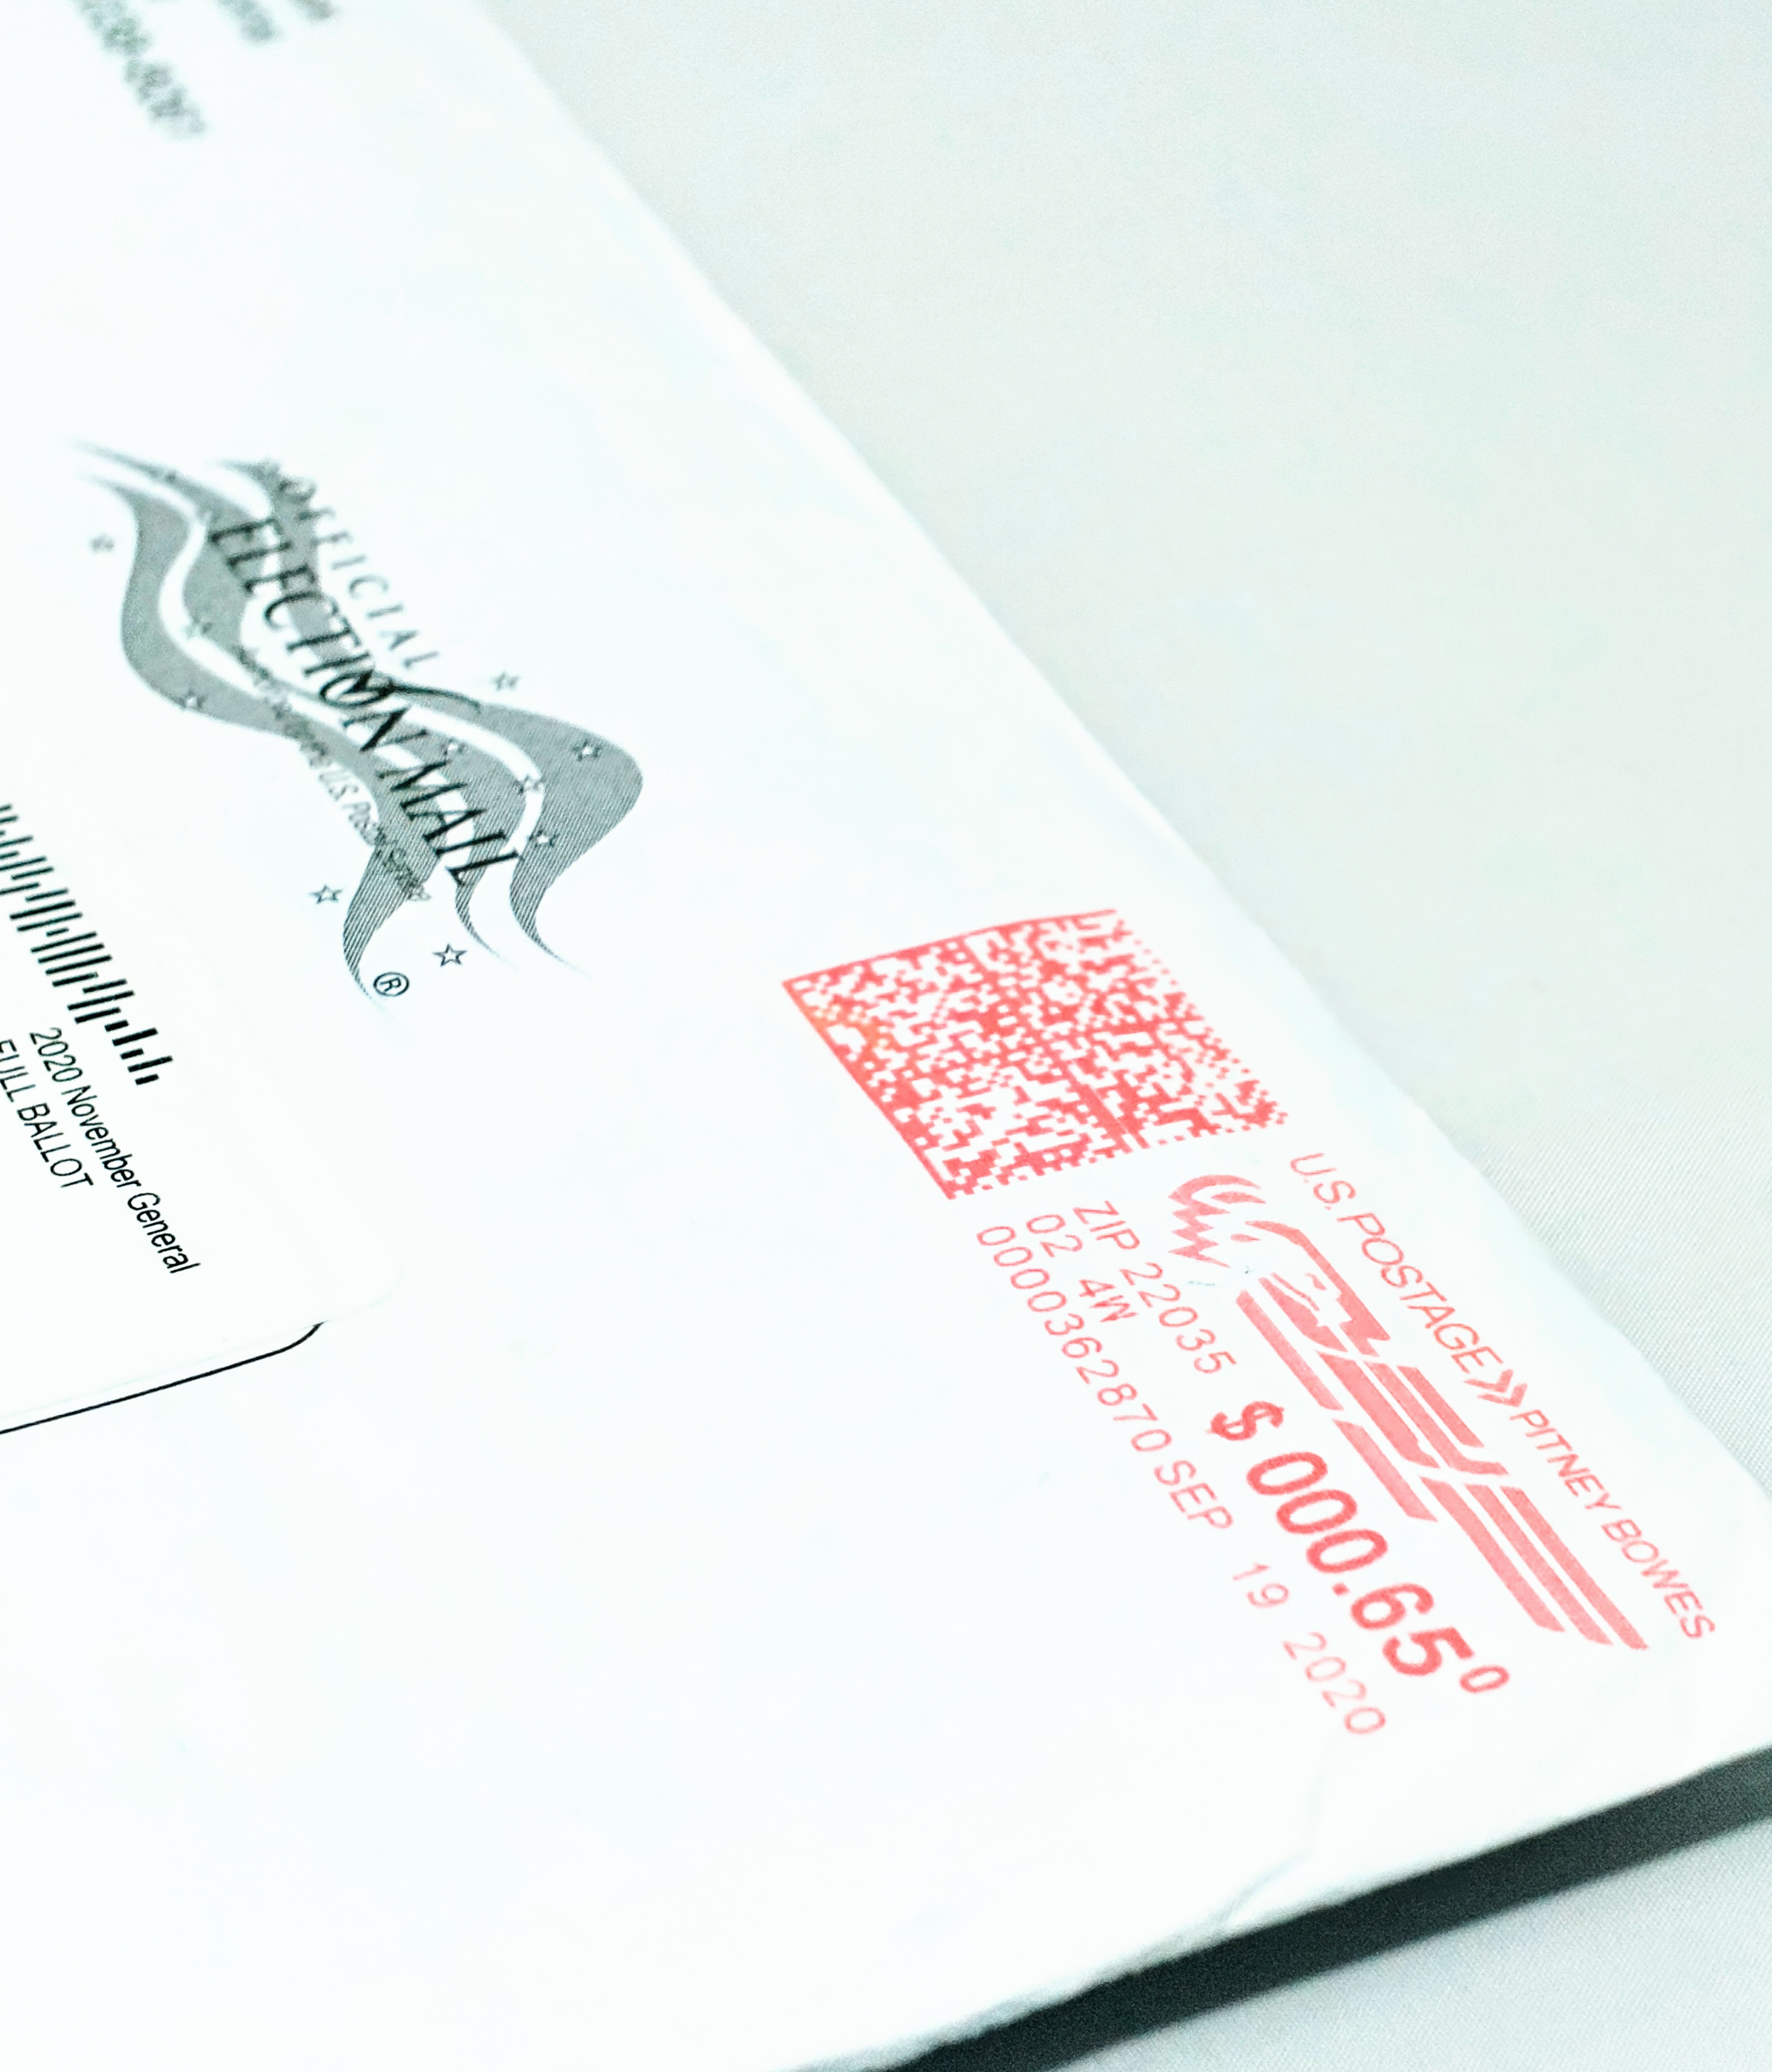 A mail ballot envelope